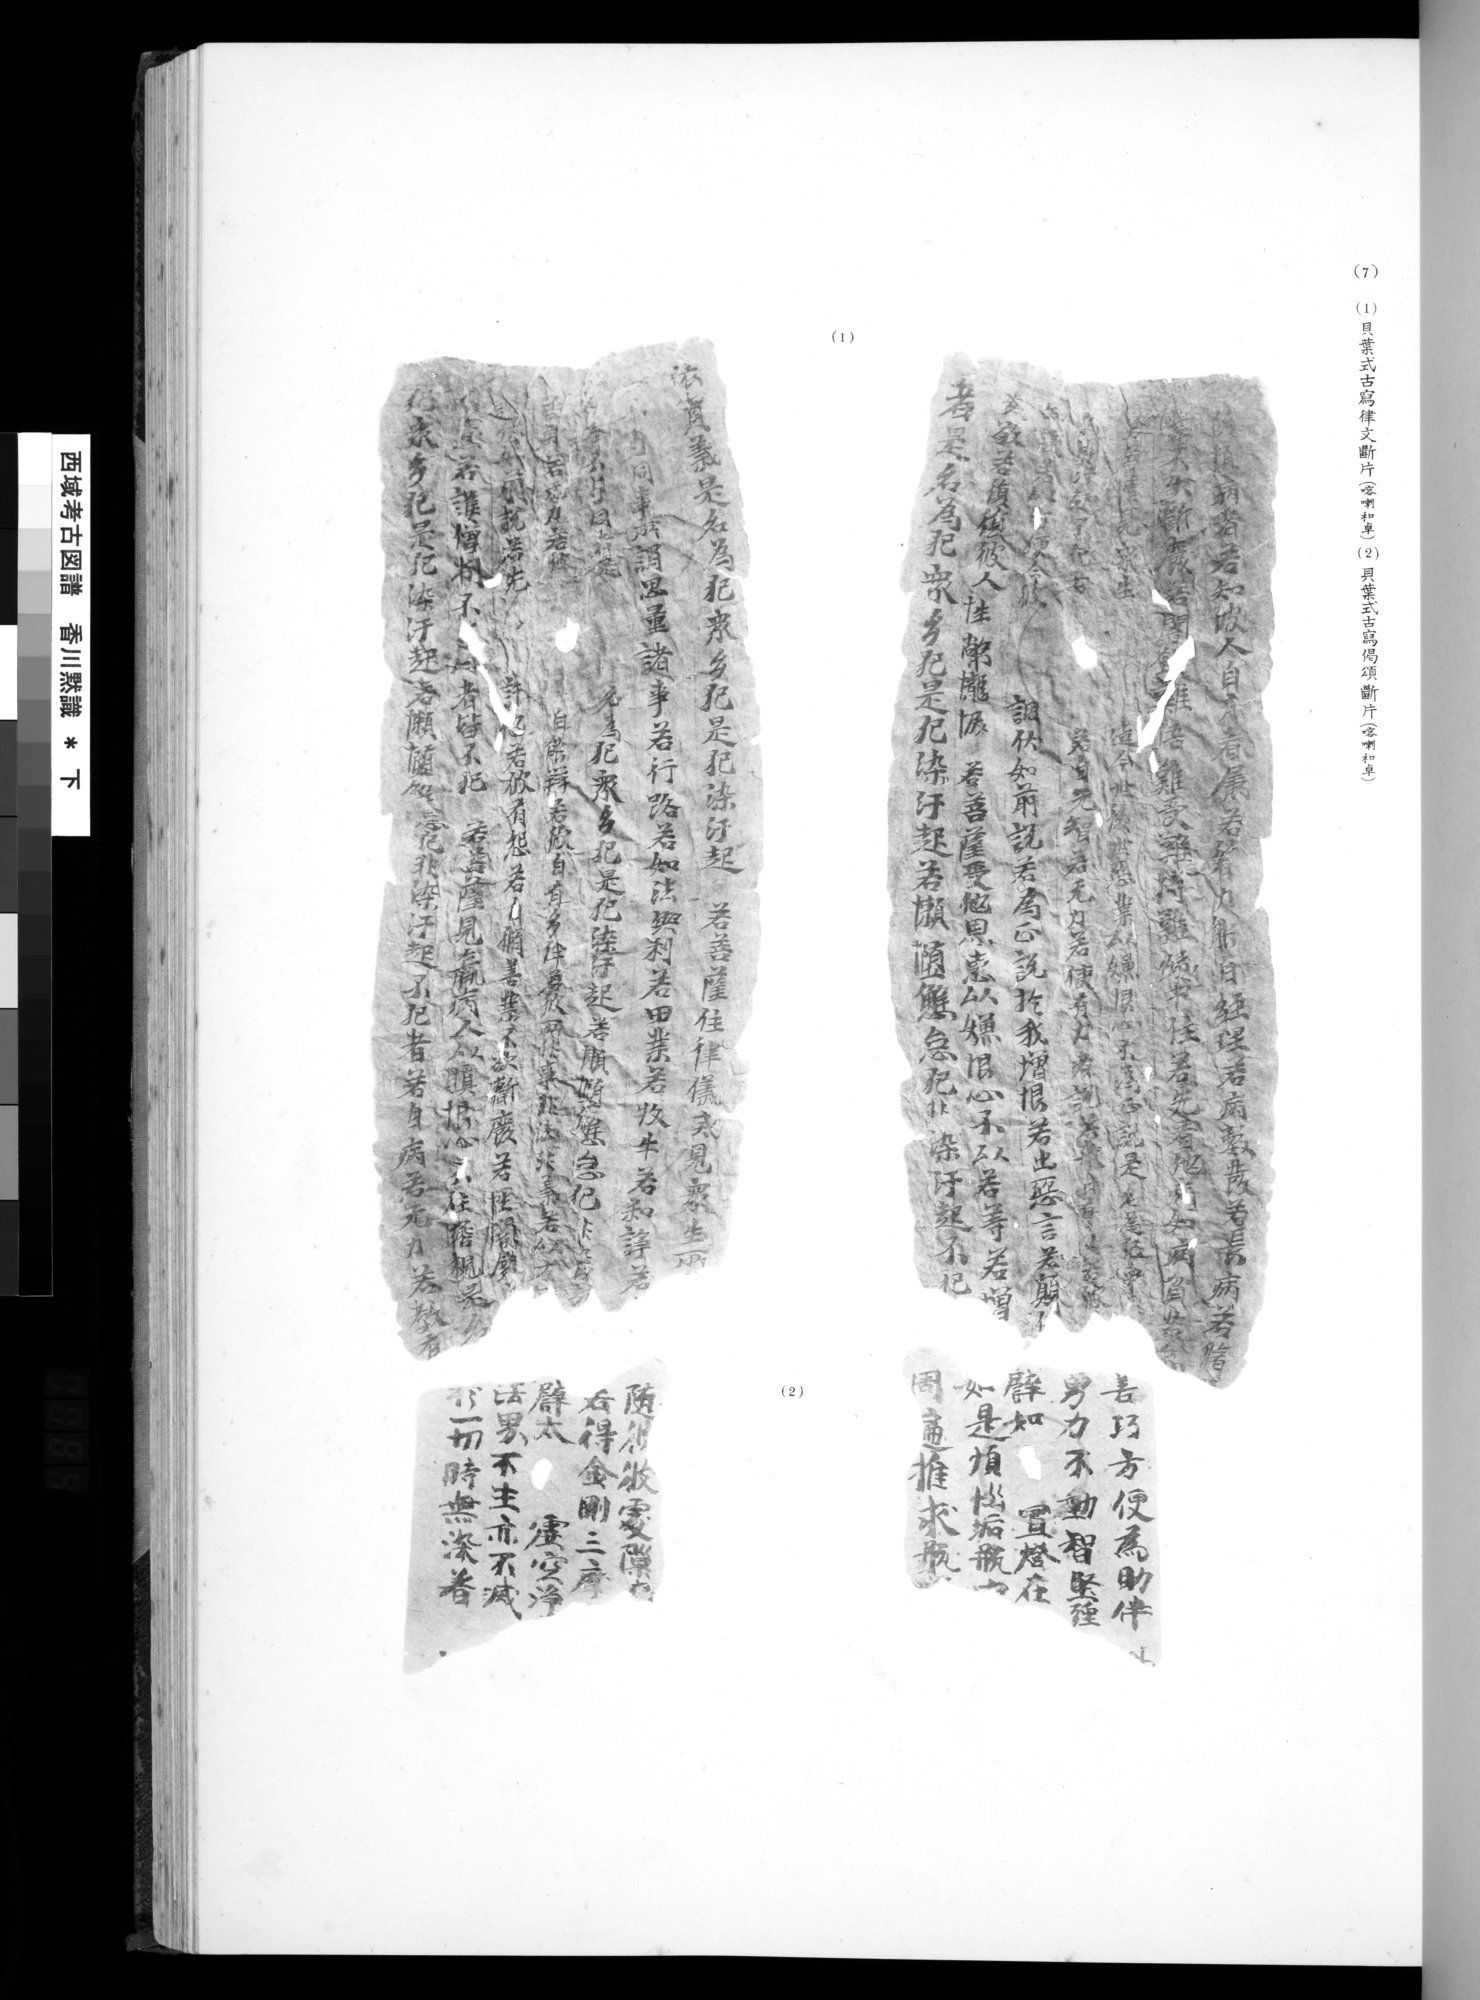 西域考古図譜 : vol.2 / Page 167 (Grayscale High Resolution Image)